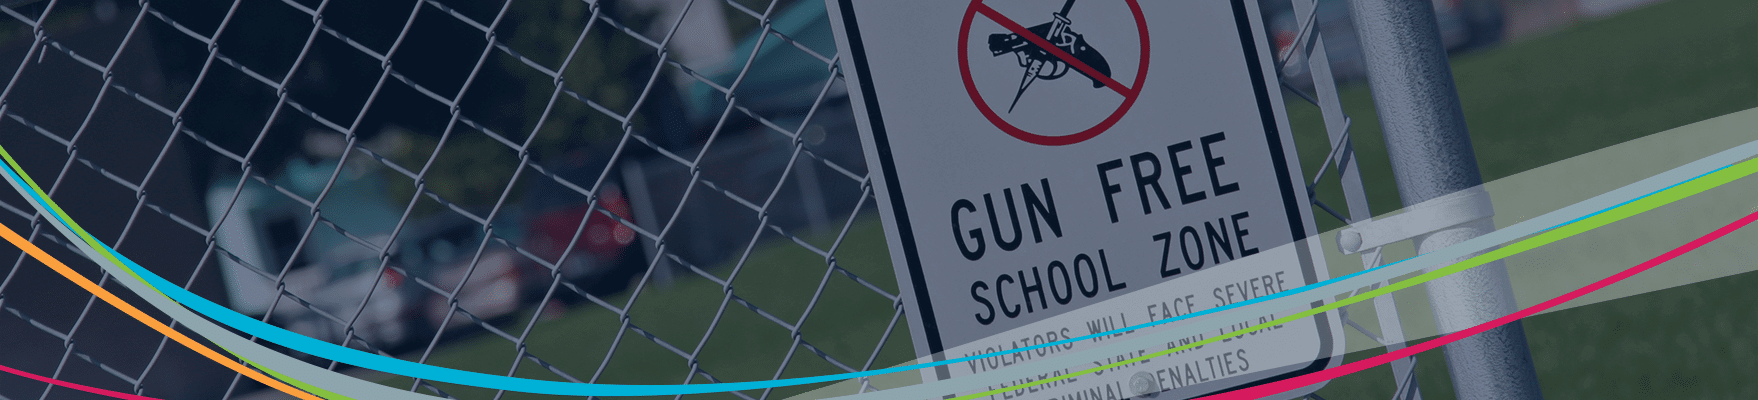 Våpen fri zon skylt på staket Skolan våld förebyggande rubrik